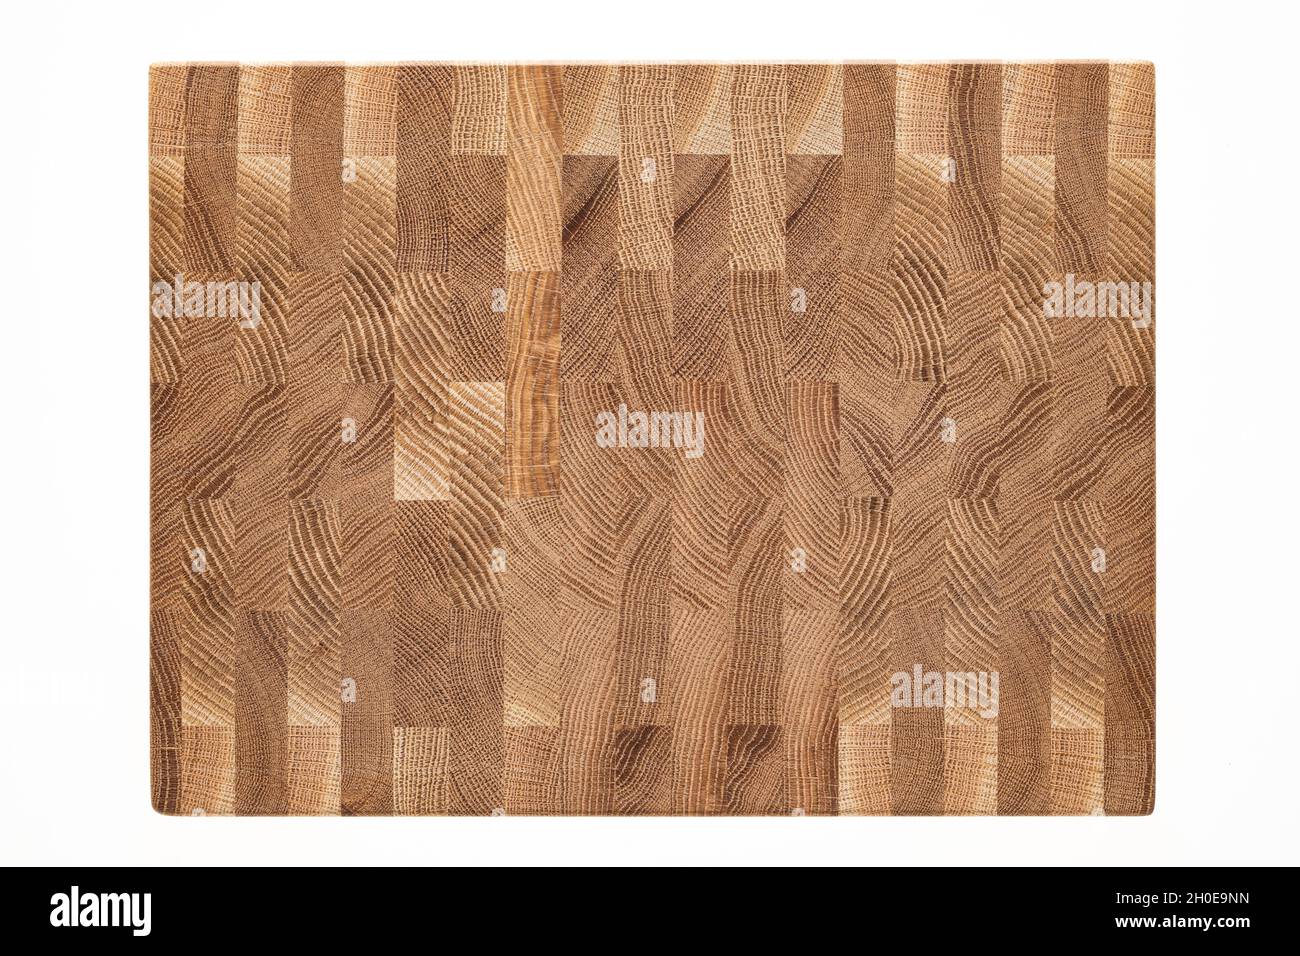 Texture mosaïque de planches de chêne.Bois de chêne, surface de texture naturelle. Banque D'Images